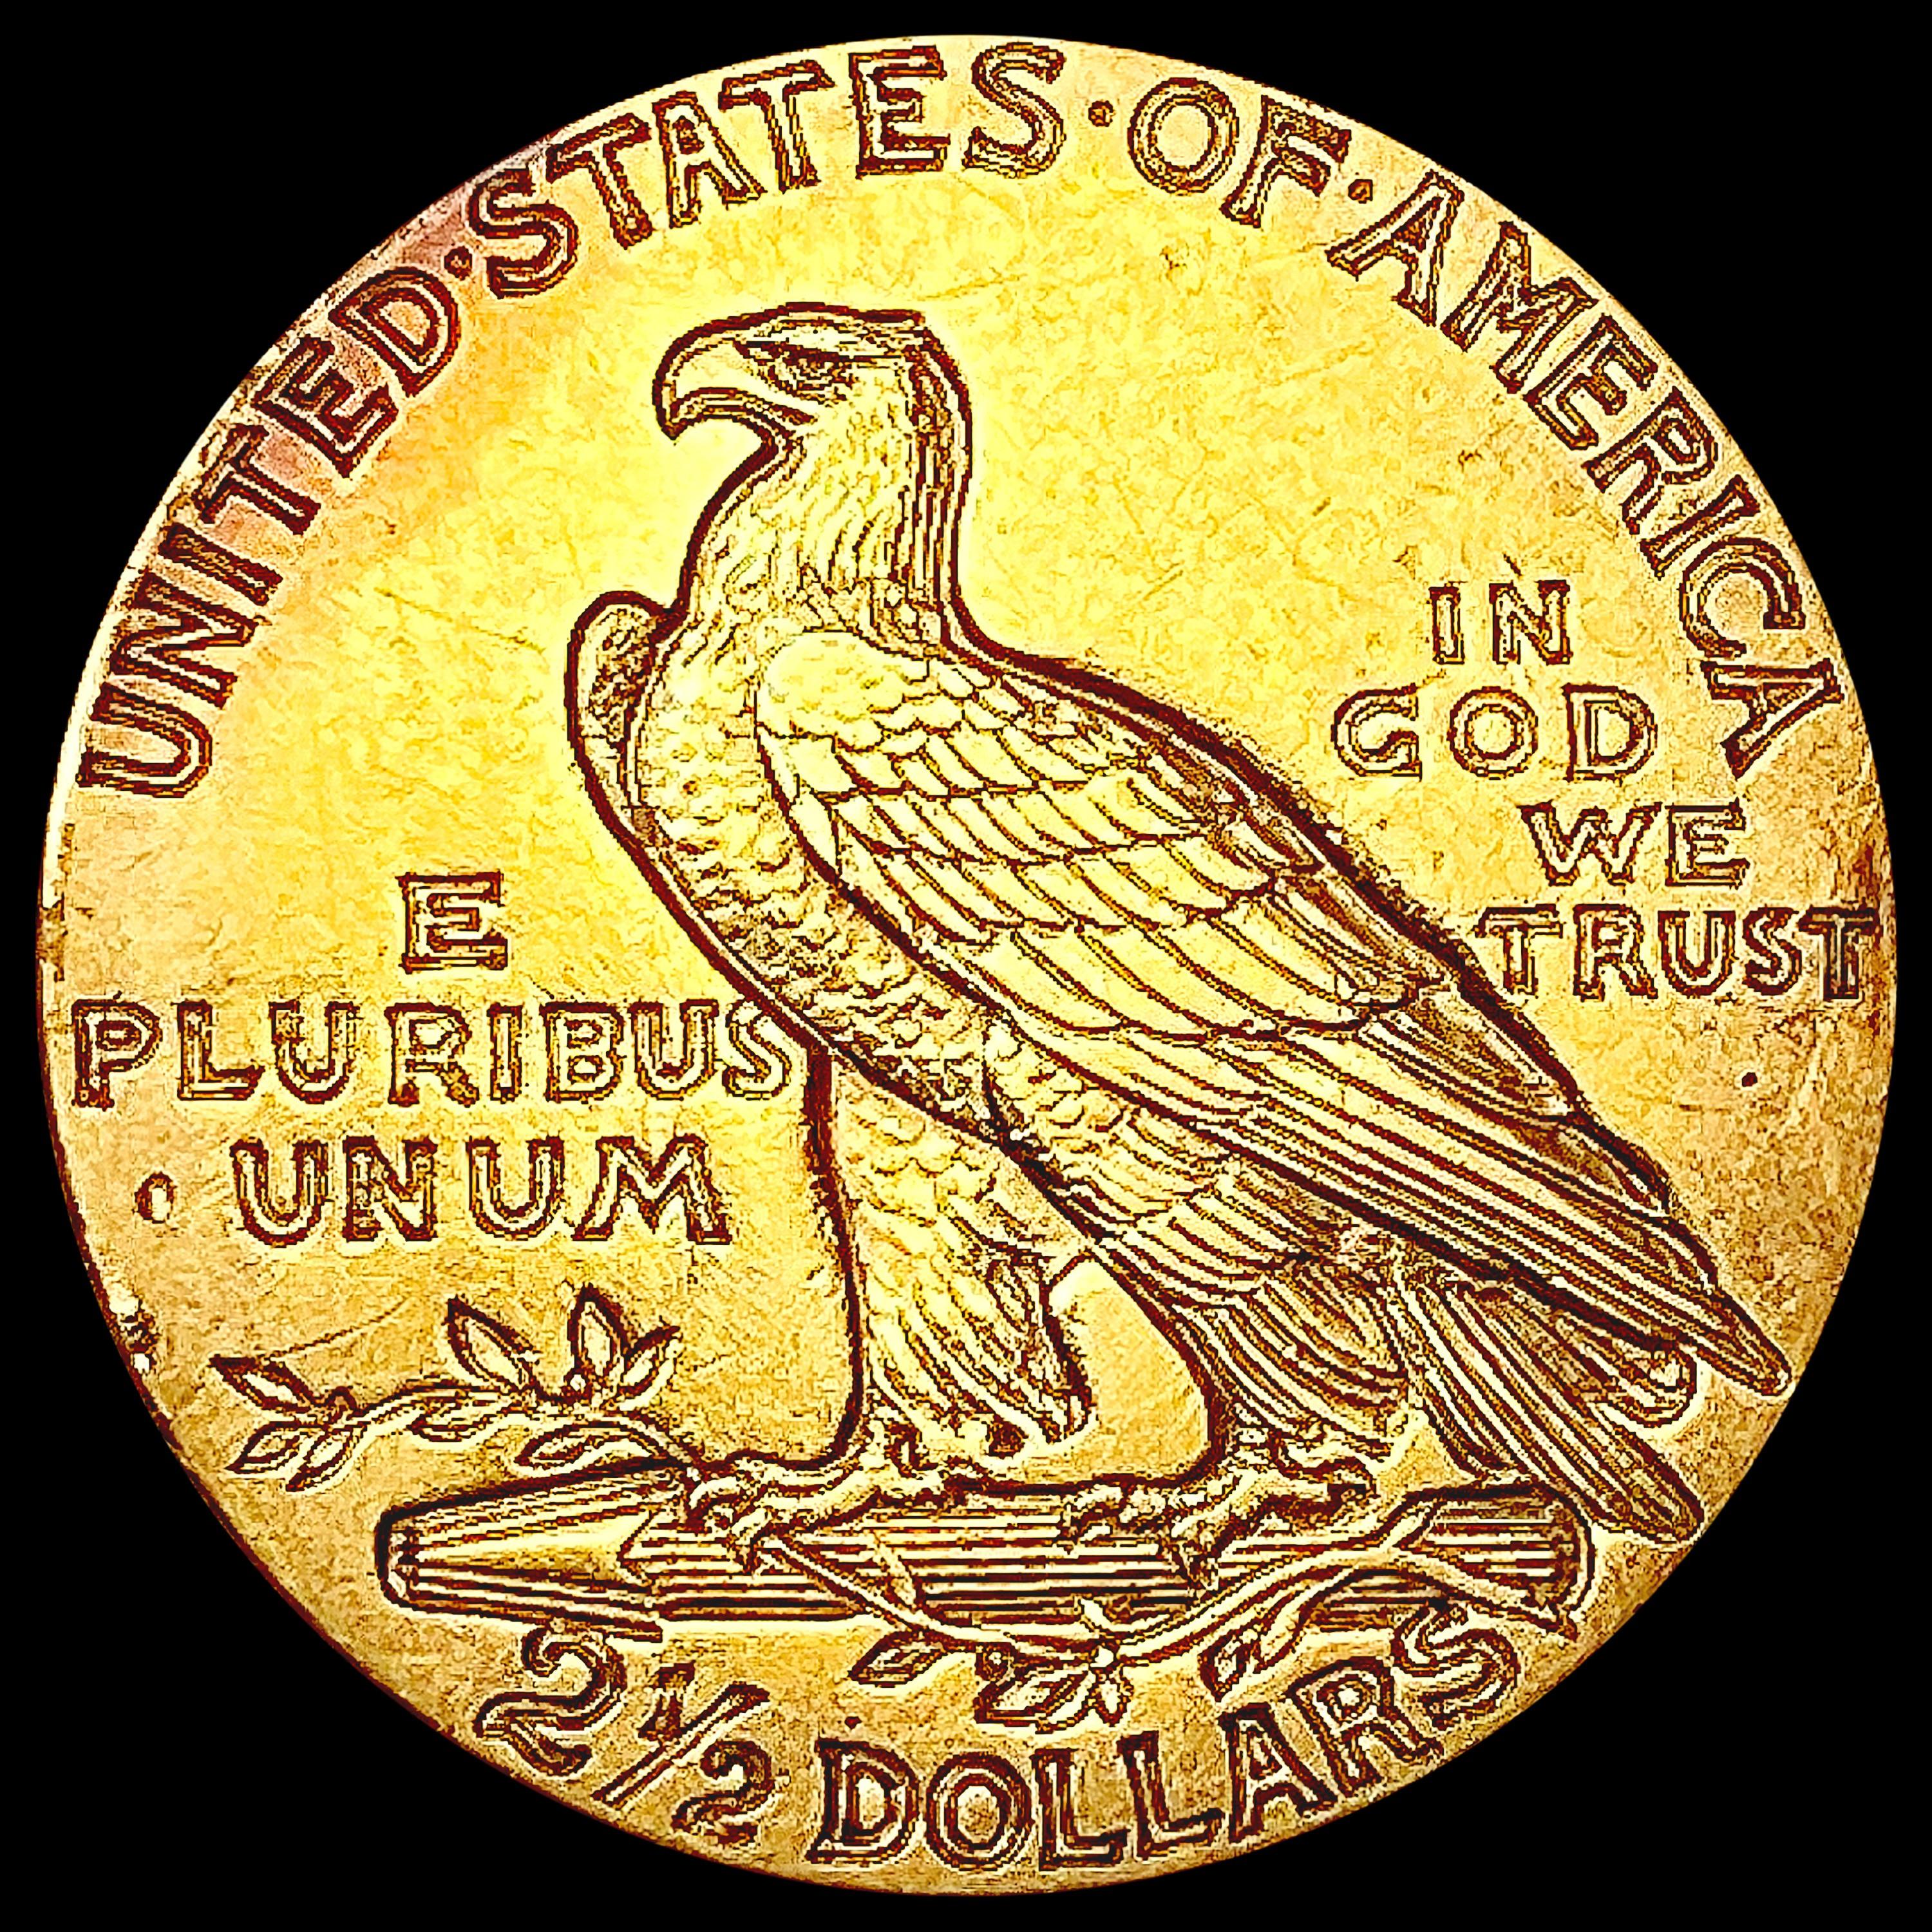 1927 $2.50 Gold Quarter Eagle CHOICE AU